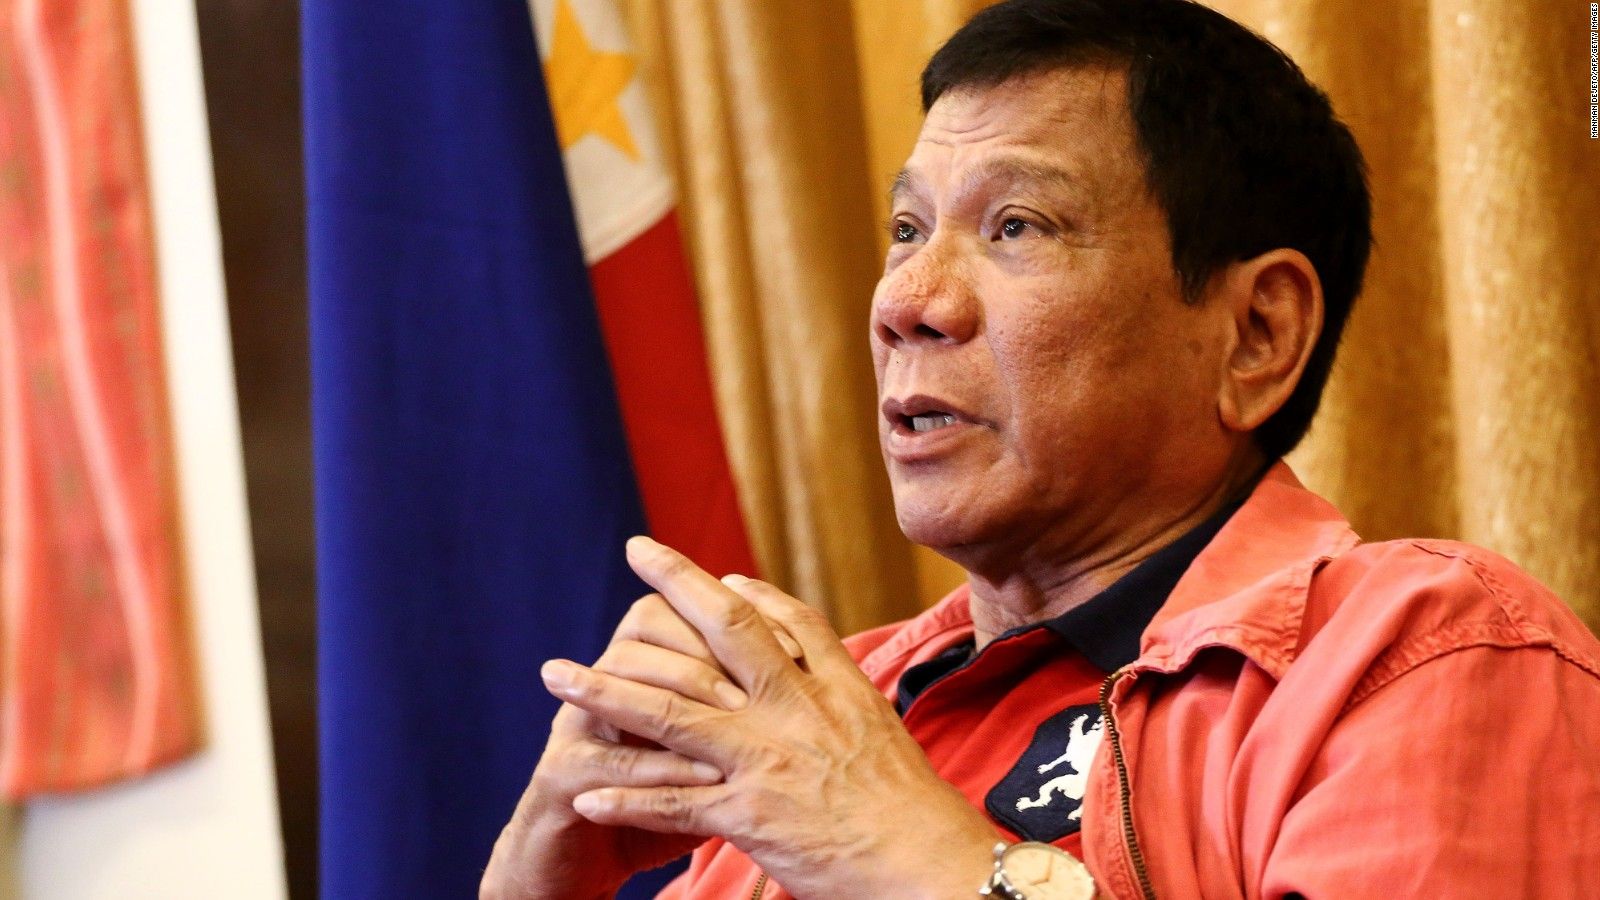 Philippines President Rodrigo Duterte insults US ambassador